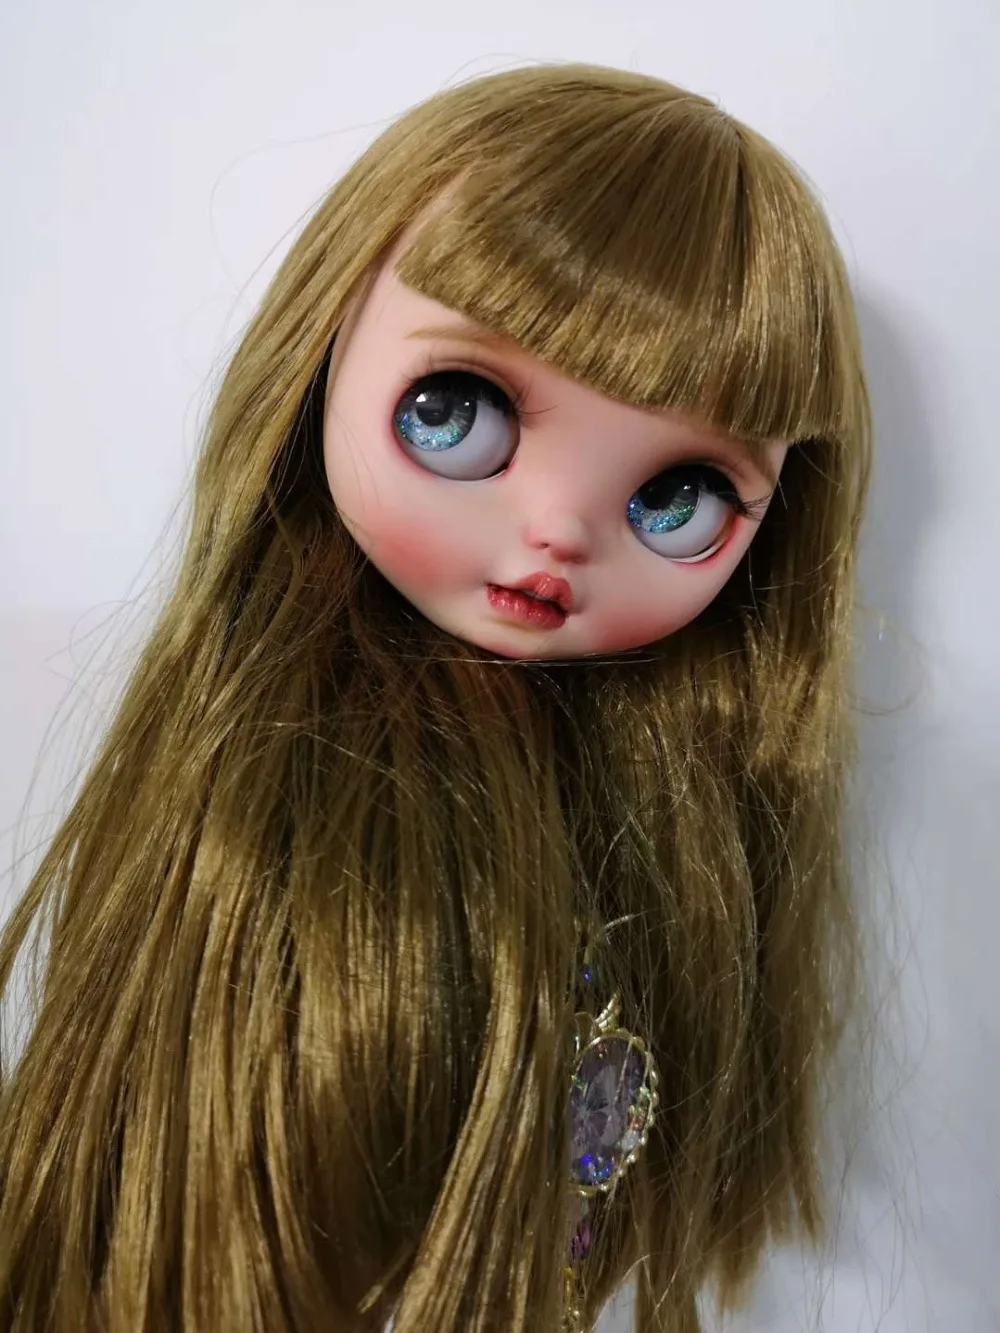 Предпродажная кукла на заказ DIY Nude blyth кукла 20190905